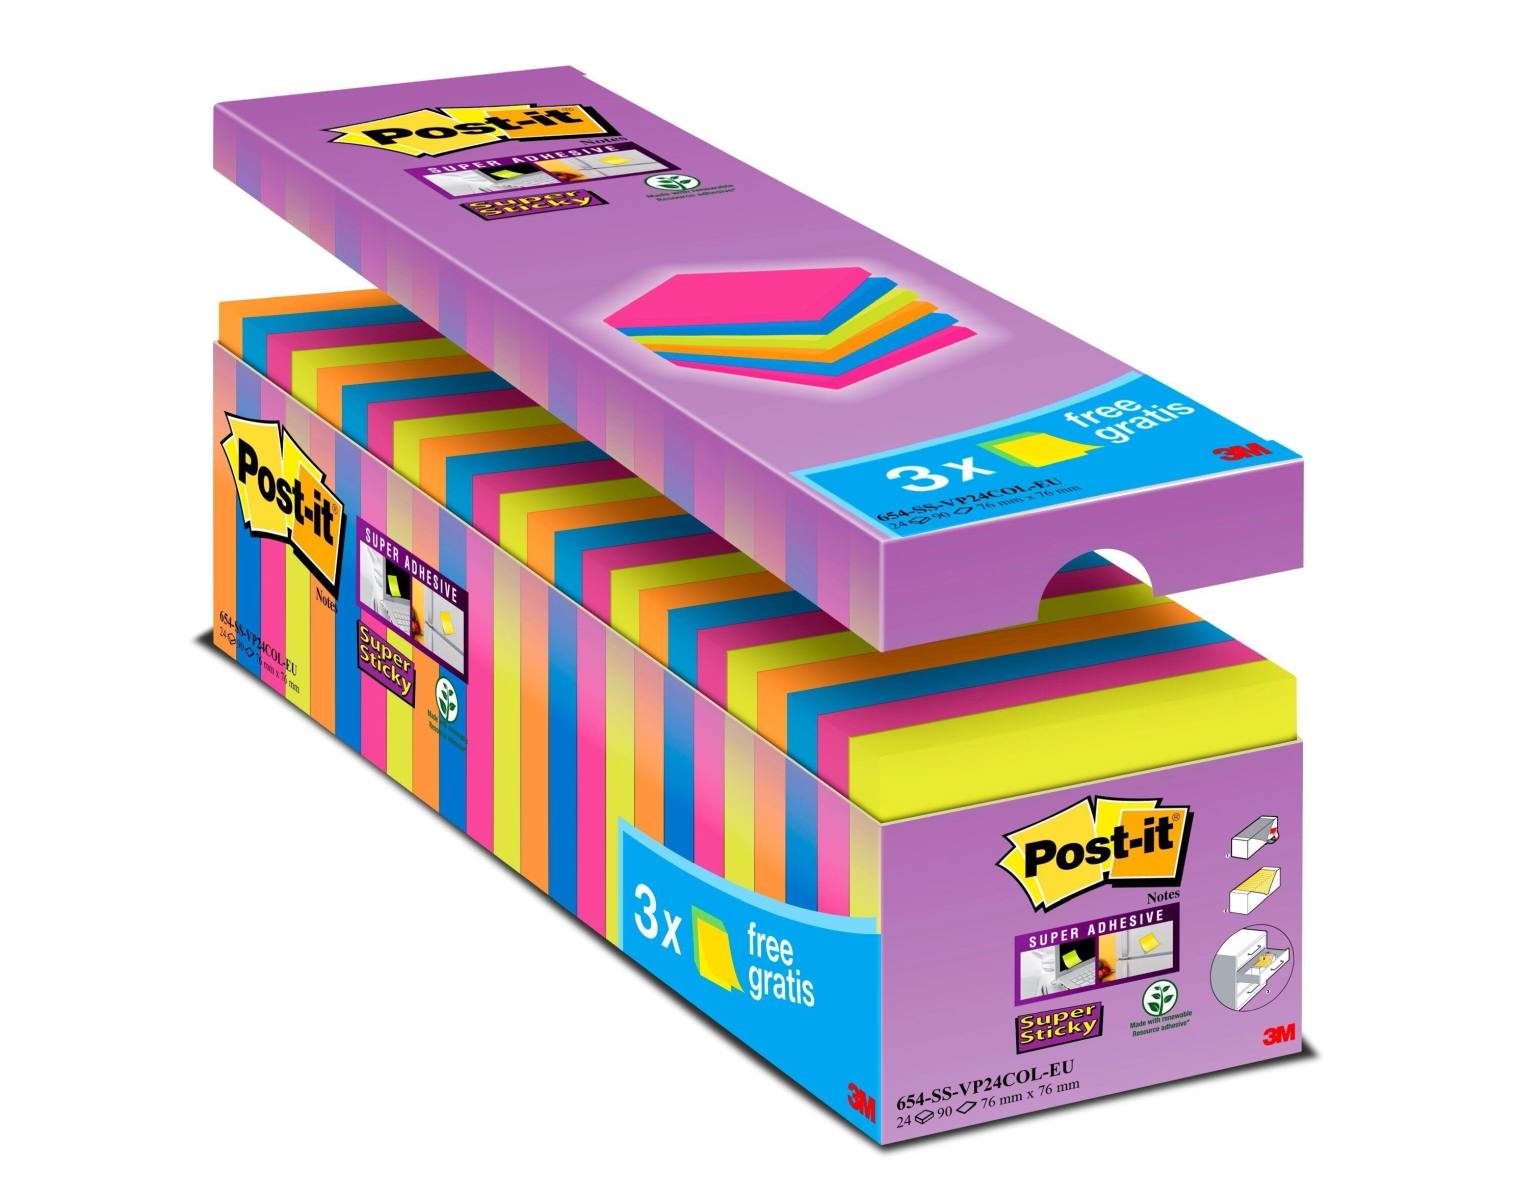 3M Post-it Super Sticky Notes Promotion 654SE24P, 24 blocs de 90 feuilles à prix avantageux, couleurs assorties, 76 mm x 76 mm